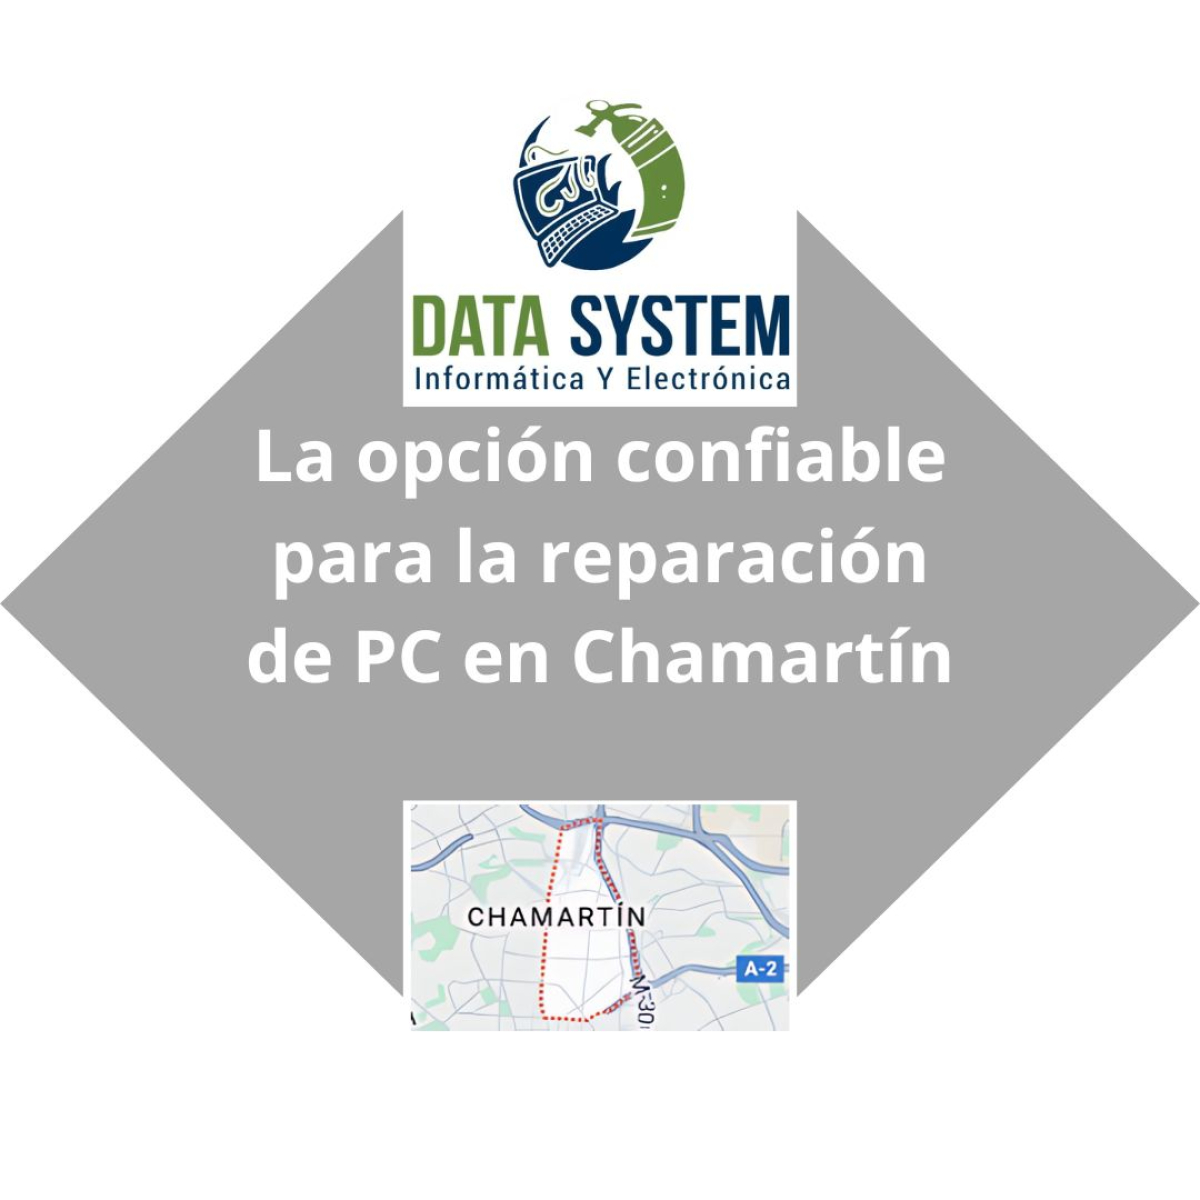 DATA SYSTEM - La opción confiable para la reparación de PC en Chamartín